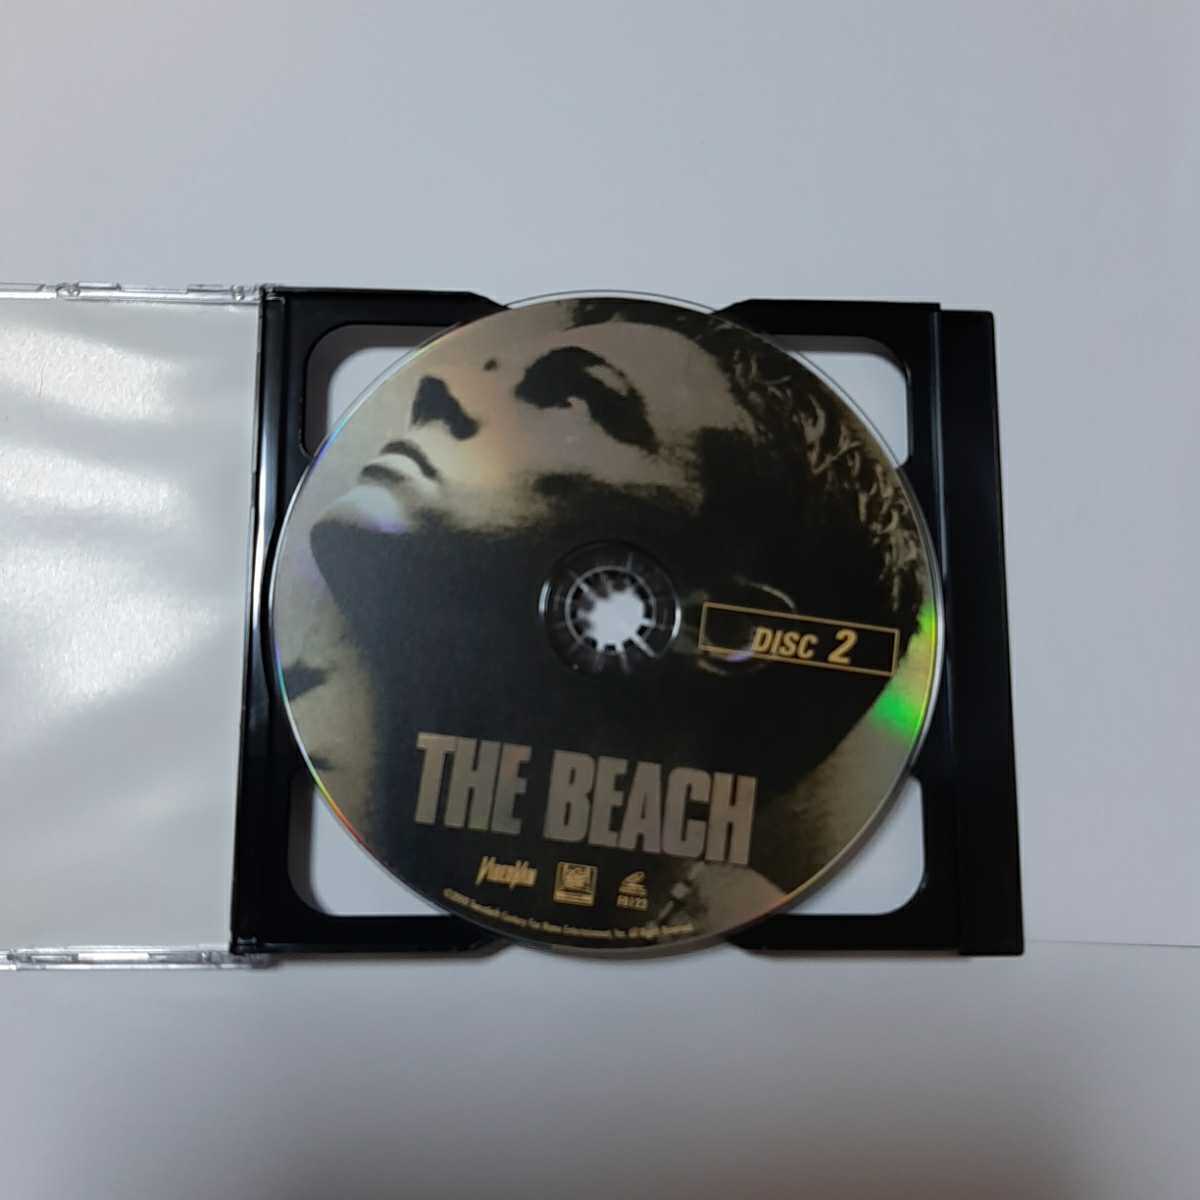 (ジャンク) THE BEACH ザ・ビーチ LEONARDO DICAPRIO ビデオCD 英語版 2枚組_画像5